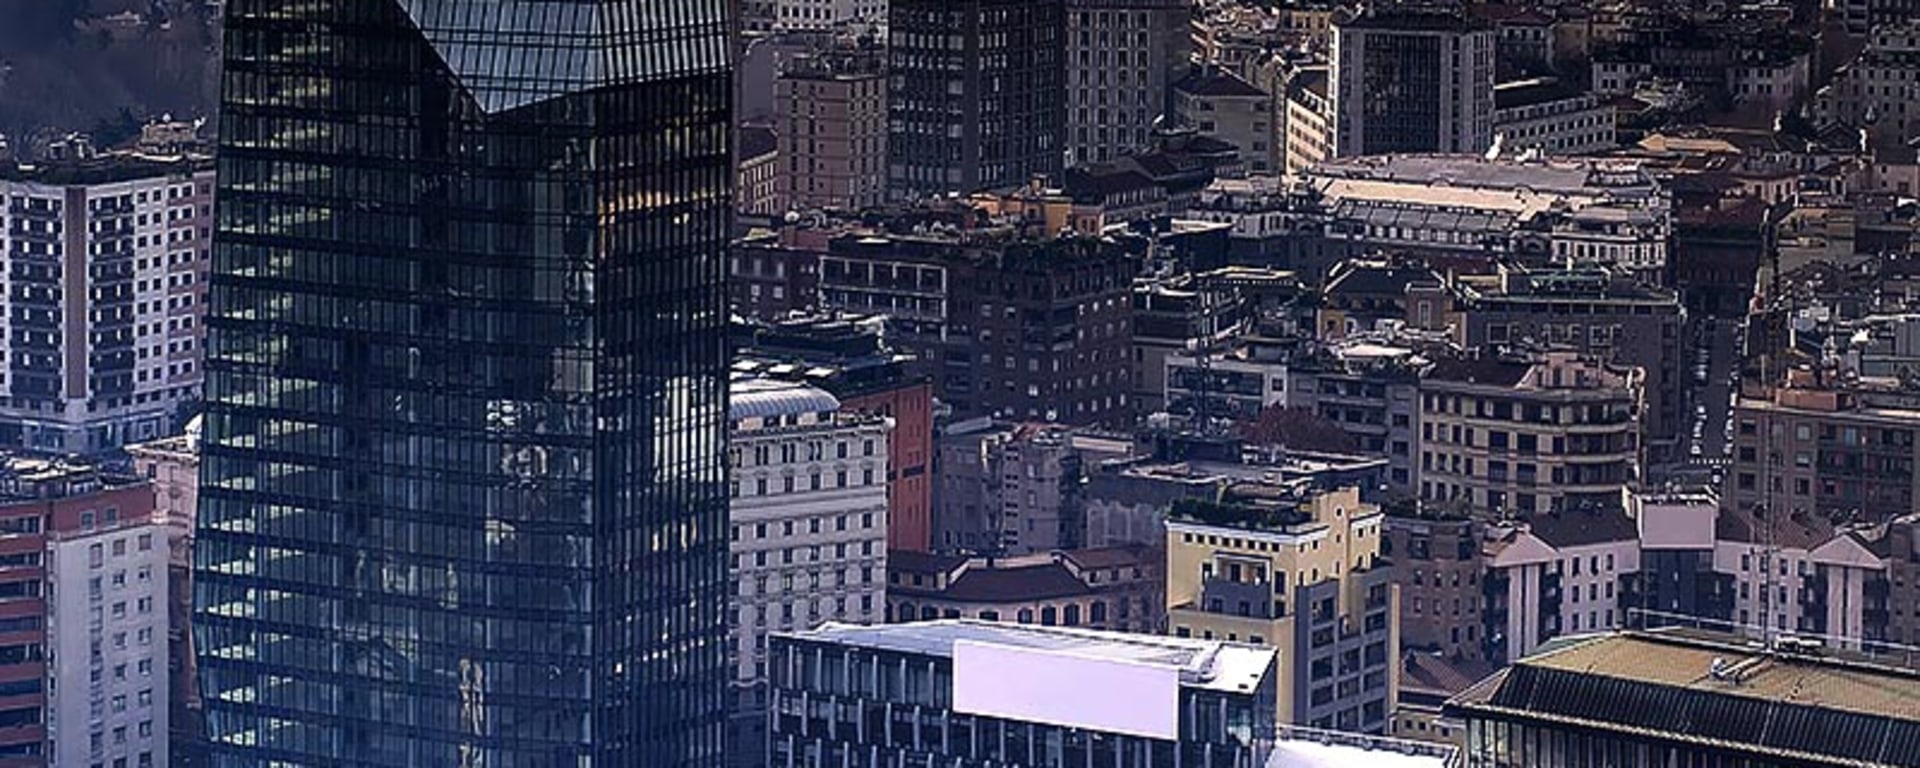 Vontobel in Milan - View over the rooftops of Milan